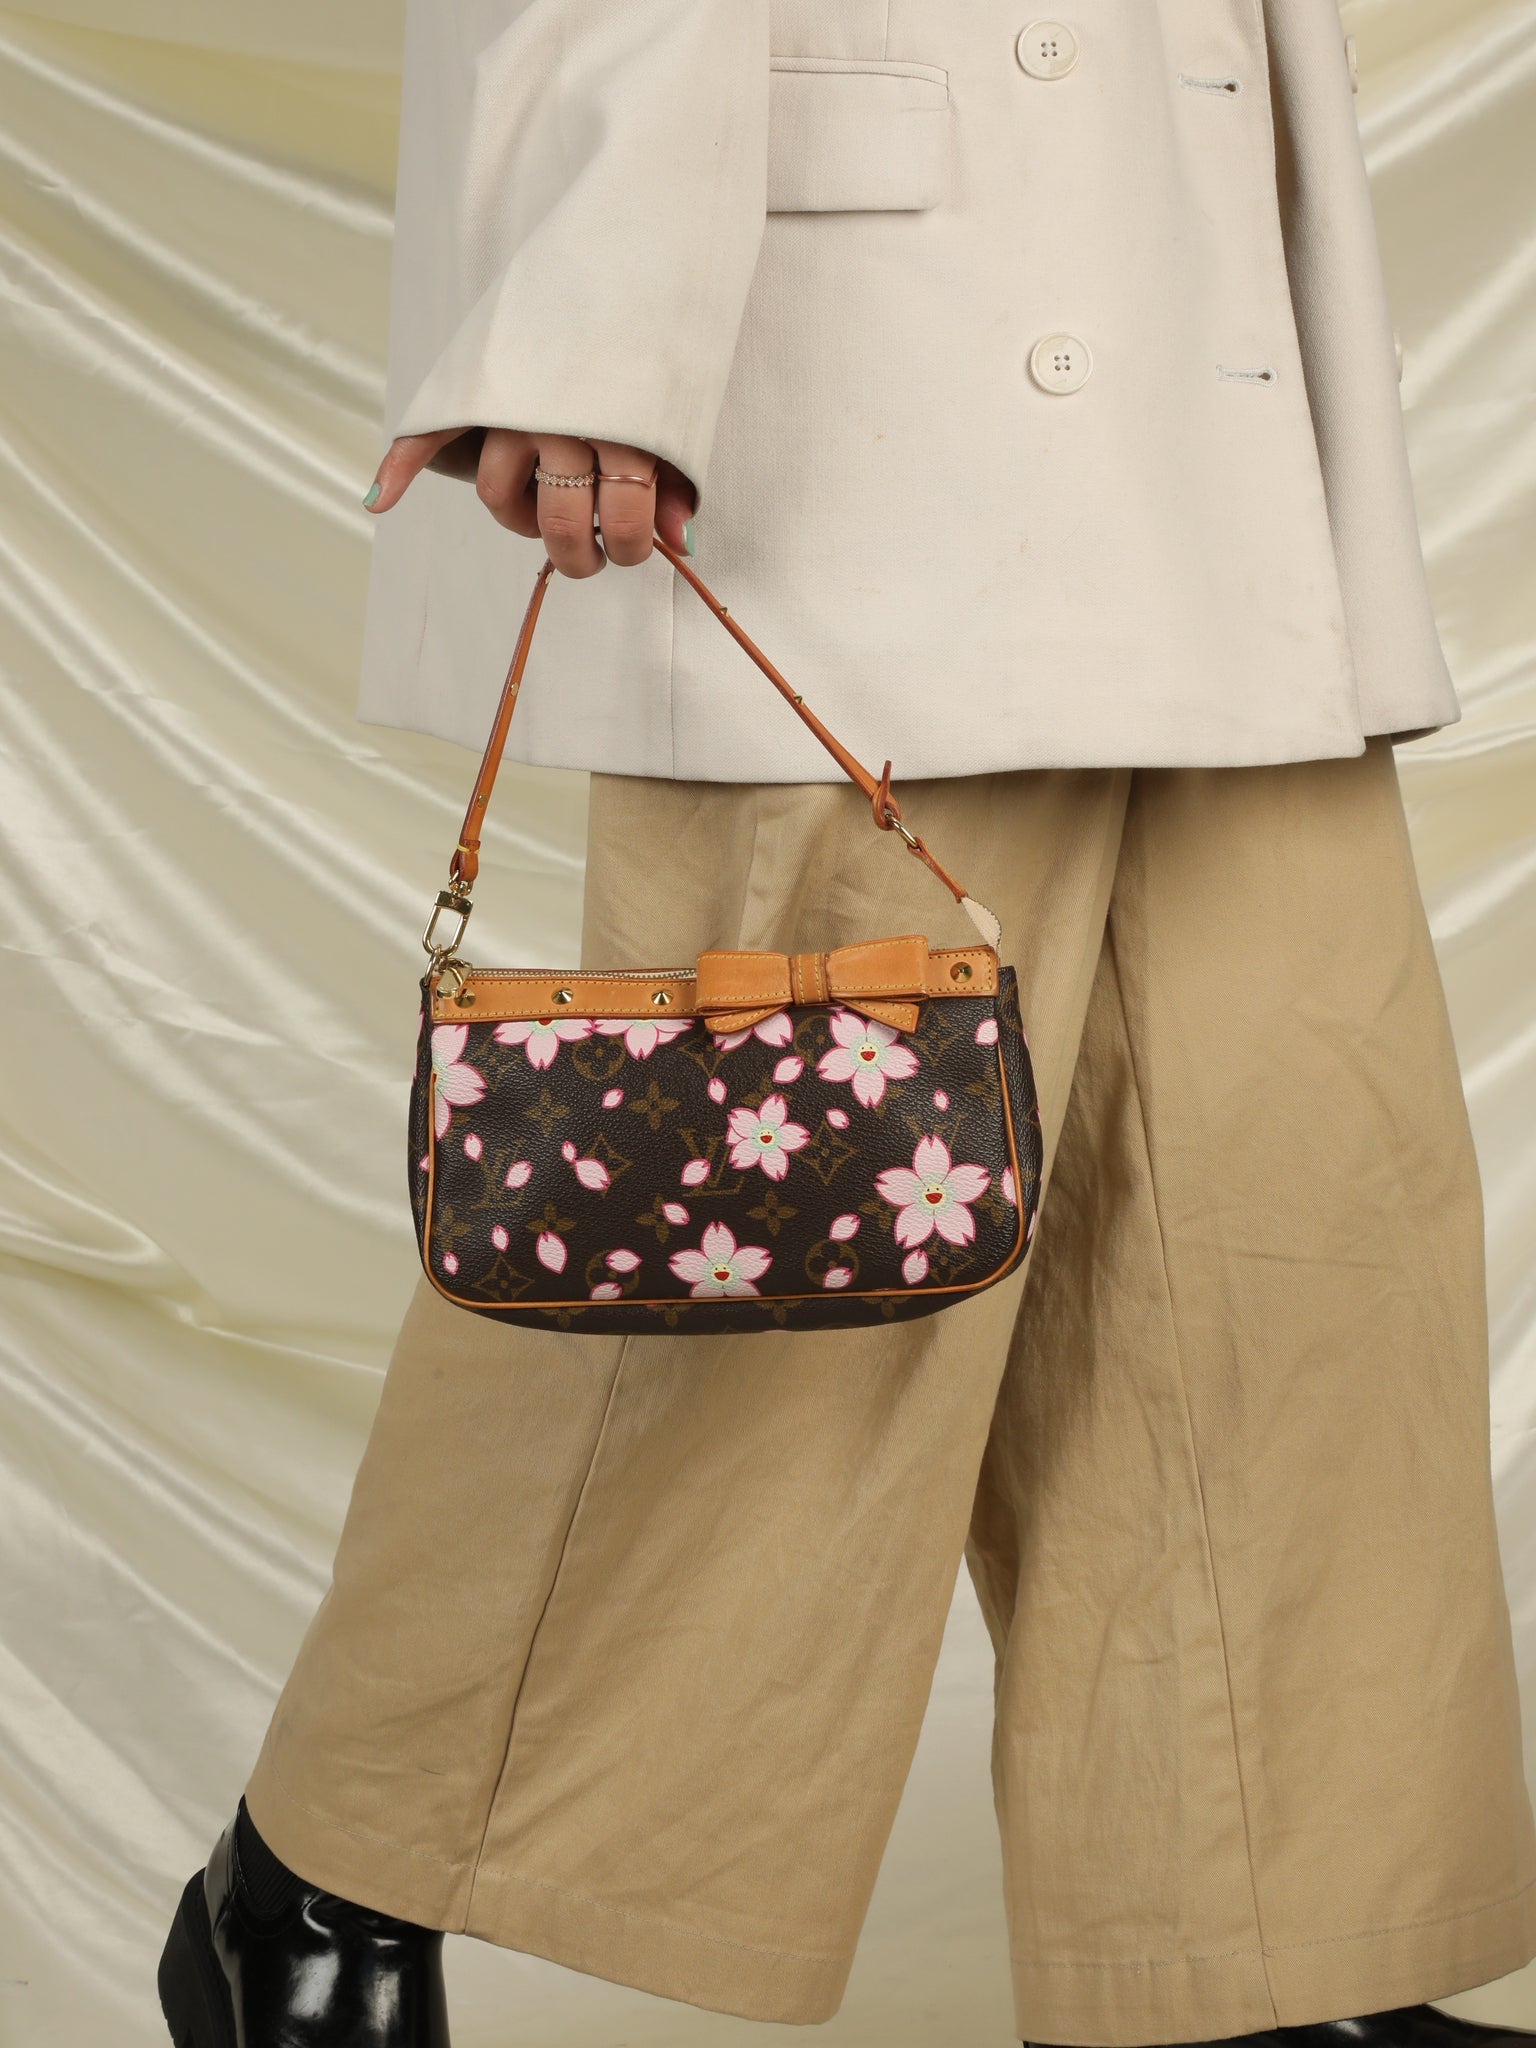 Limited Edition Louis Vuitton Takashi Murakami Cherry Blossom Pochette